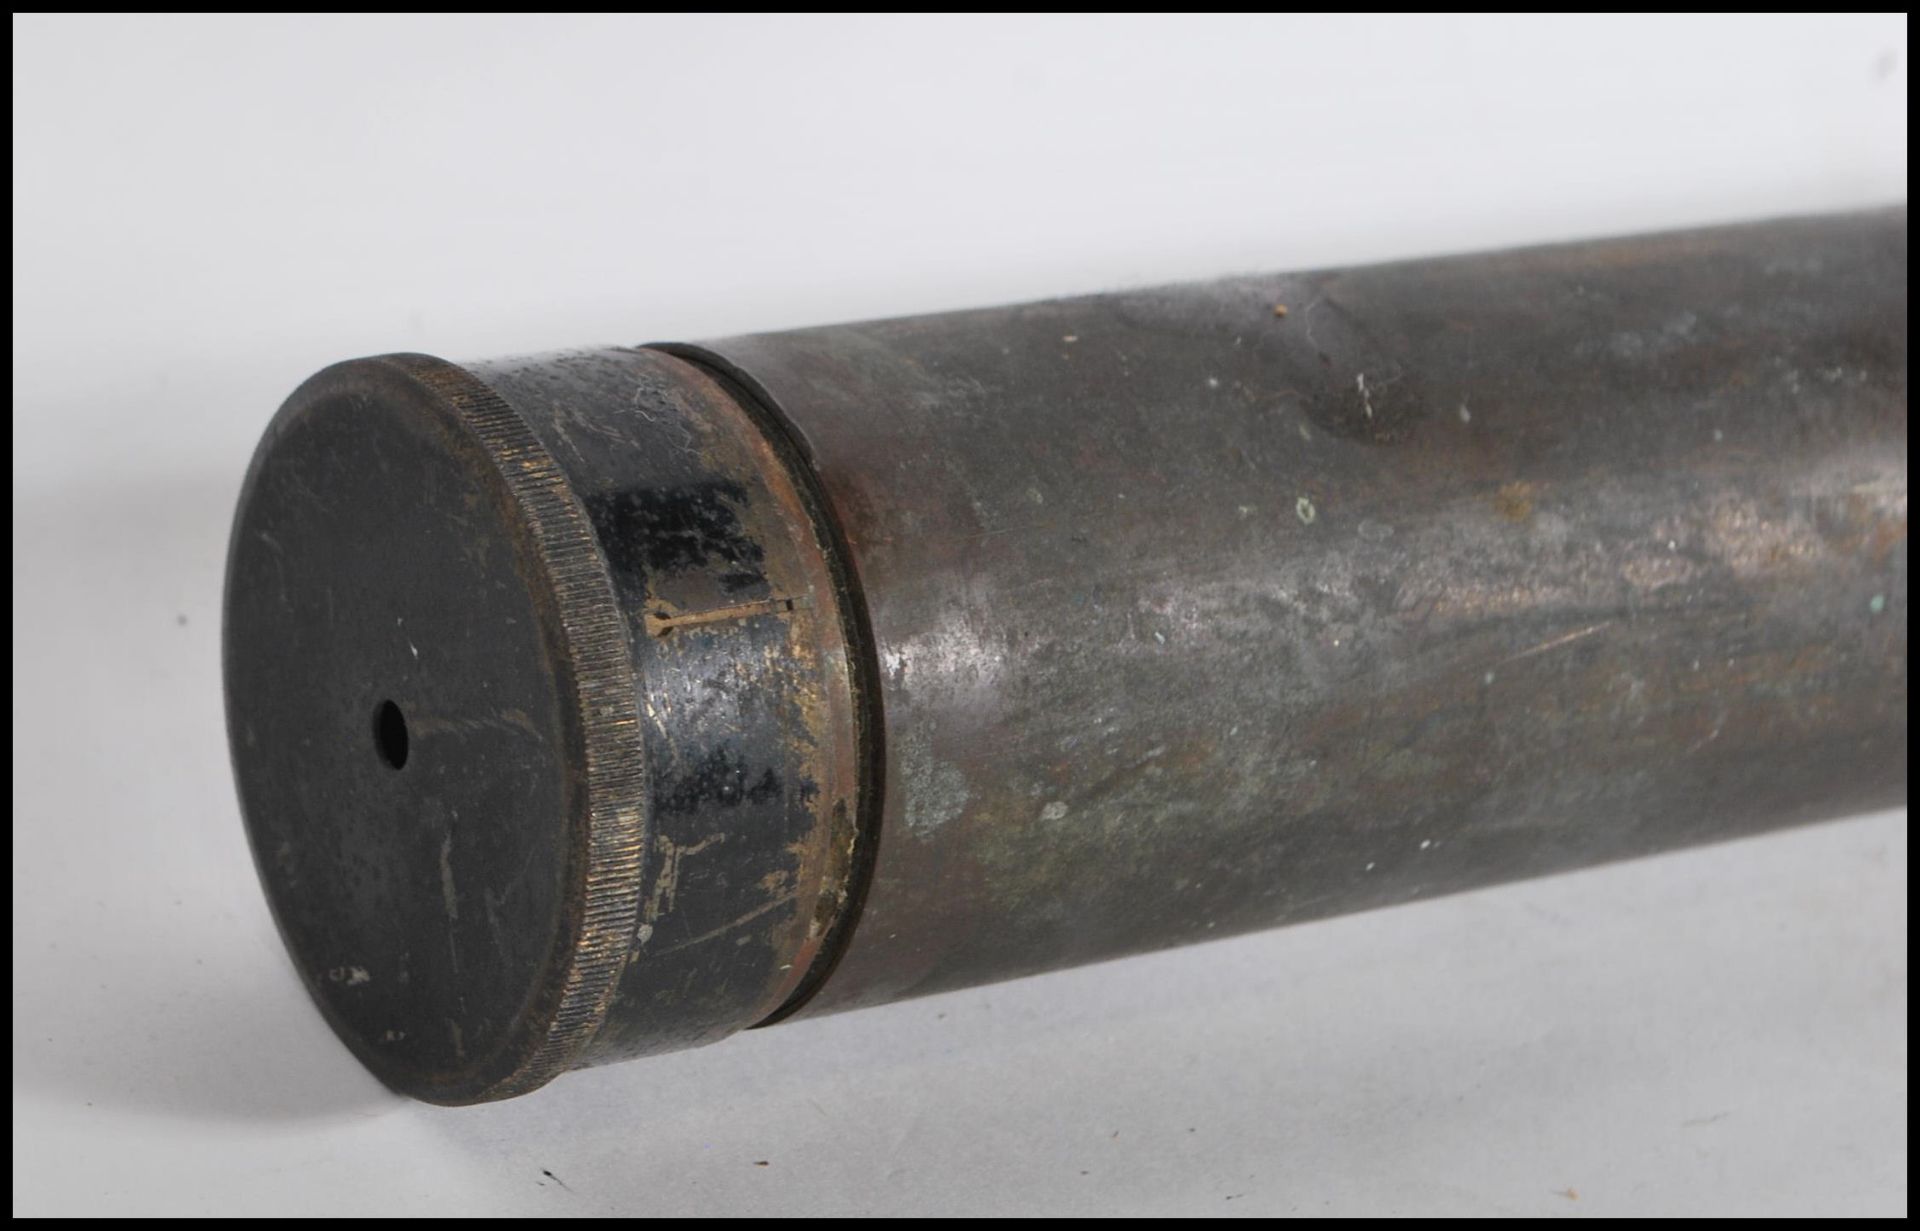 A WW2 Second World War gun sight / heavy artillery gun scope instrument by Ross London, patent no. - Bild 2 aus 4